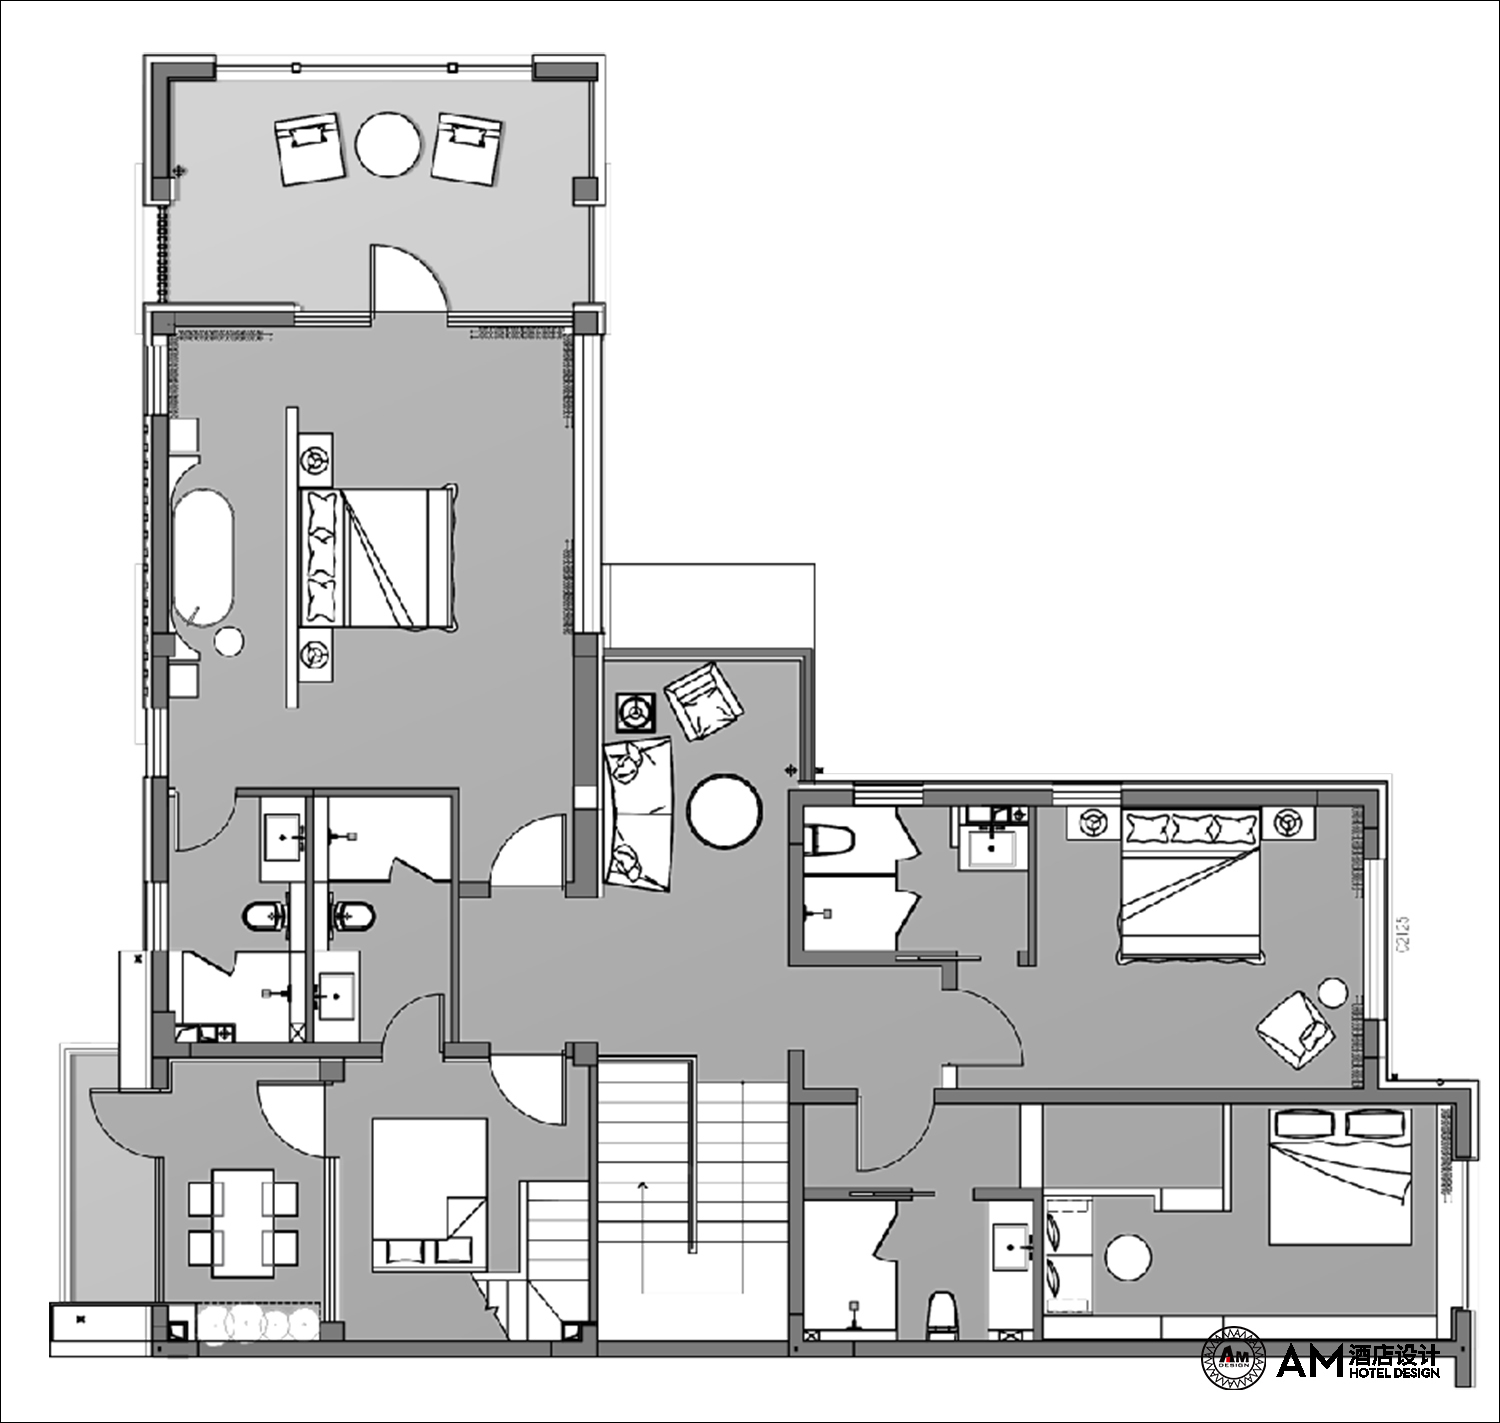 AM DESIGN | The second floor plan of qianjianyuan house in Jixian, Tianjin